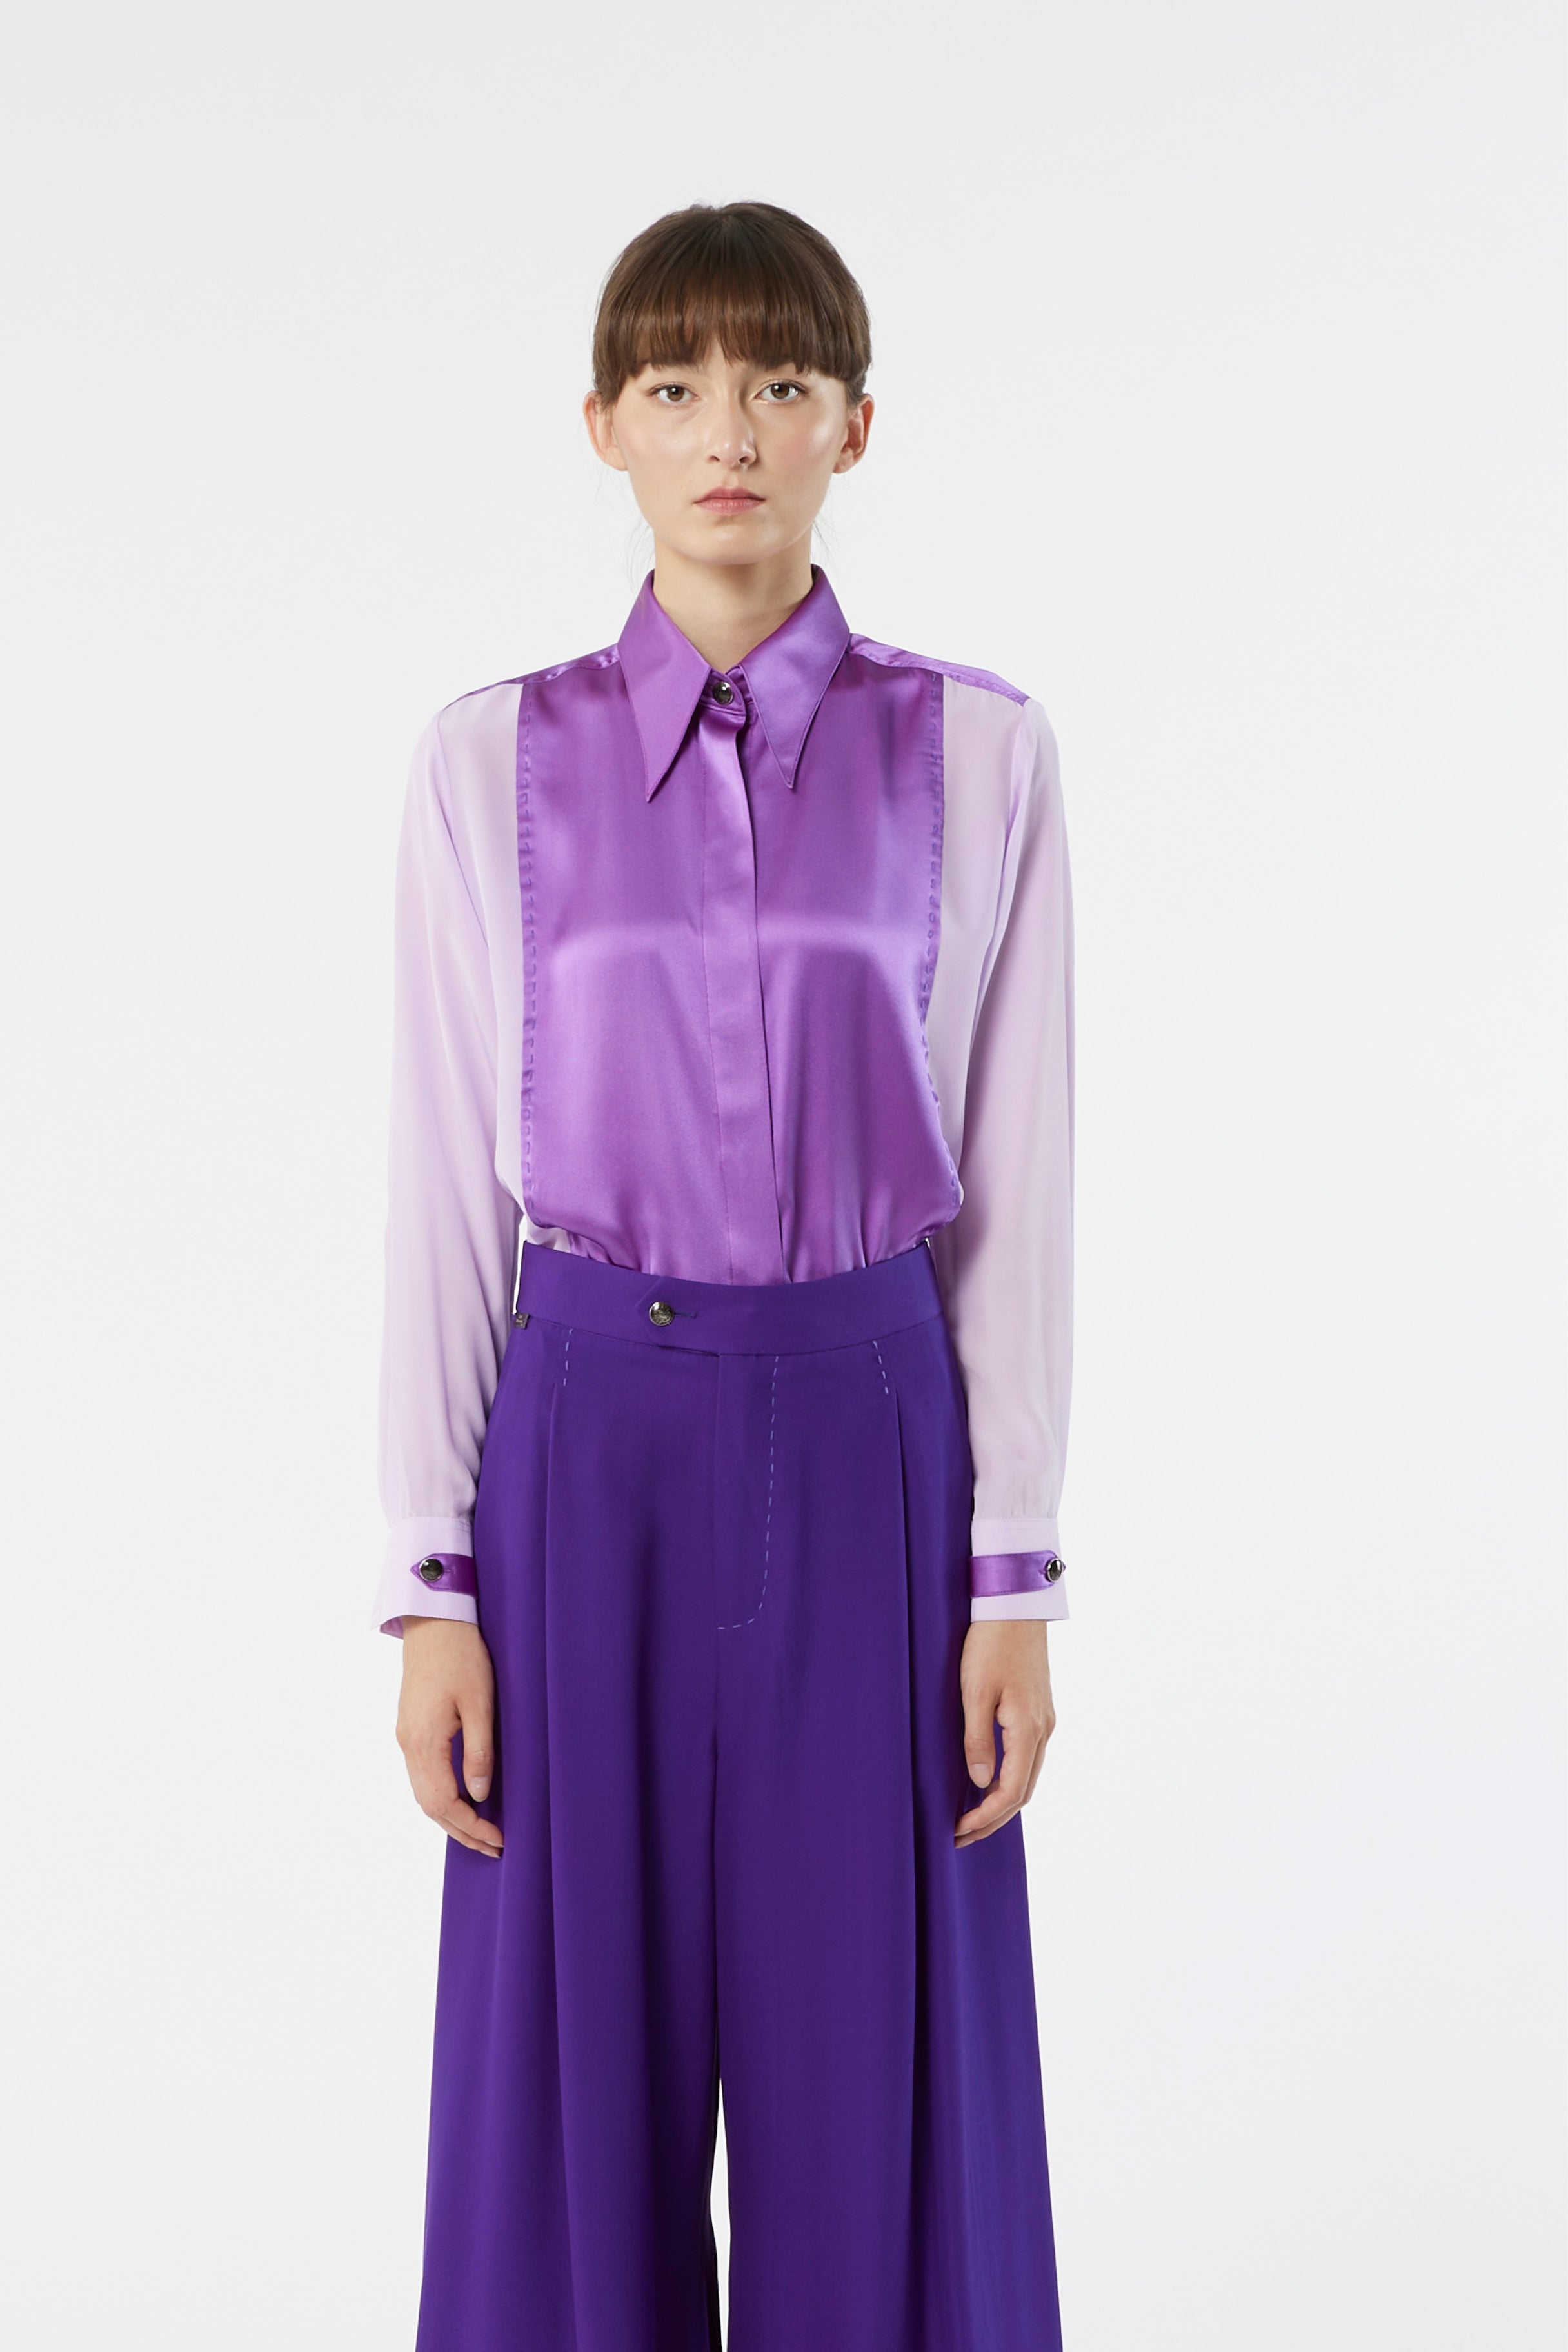 Satin vintage shirt blouse purple lilac lavender Louis vuitton